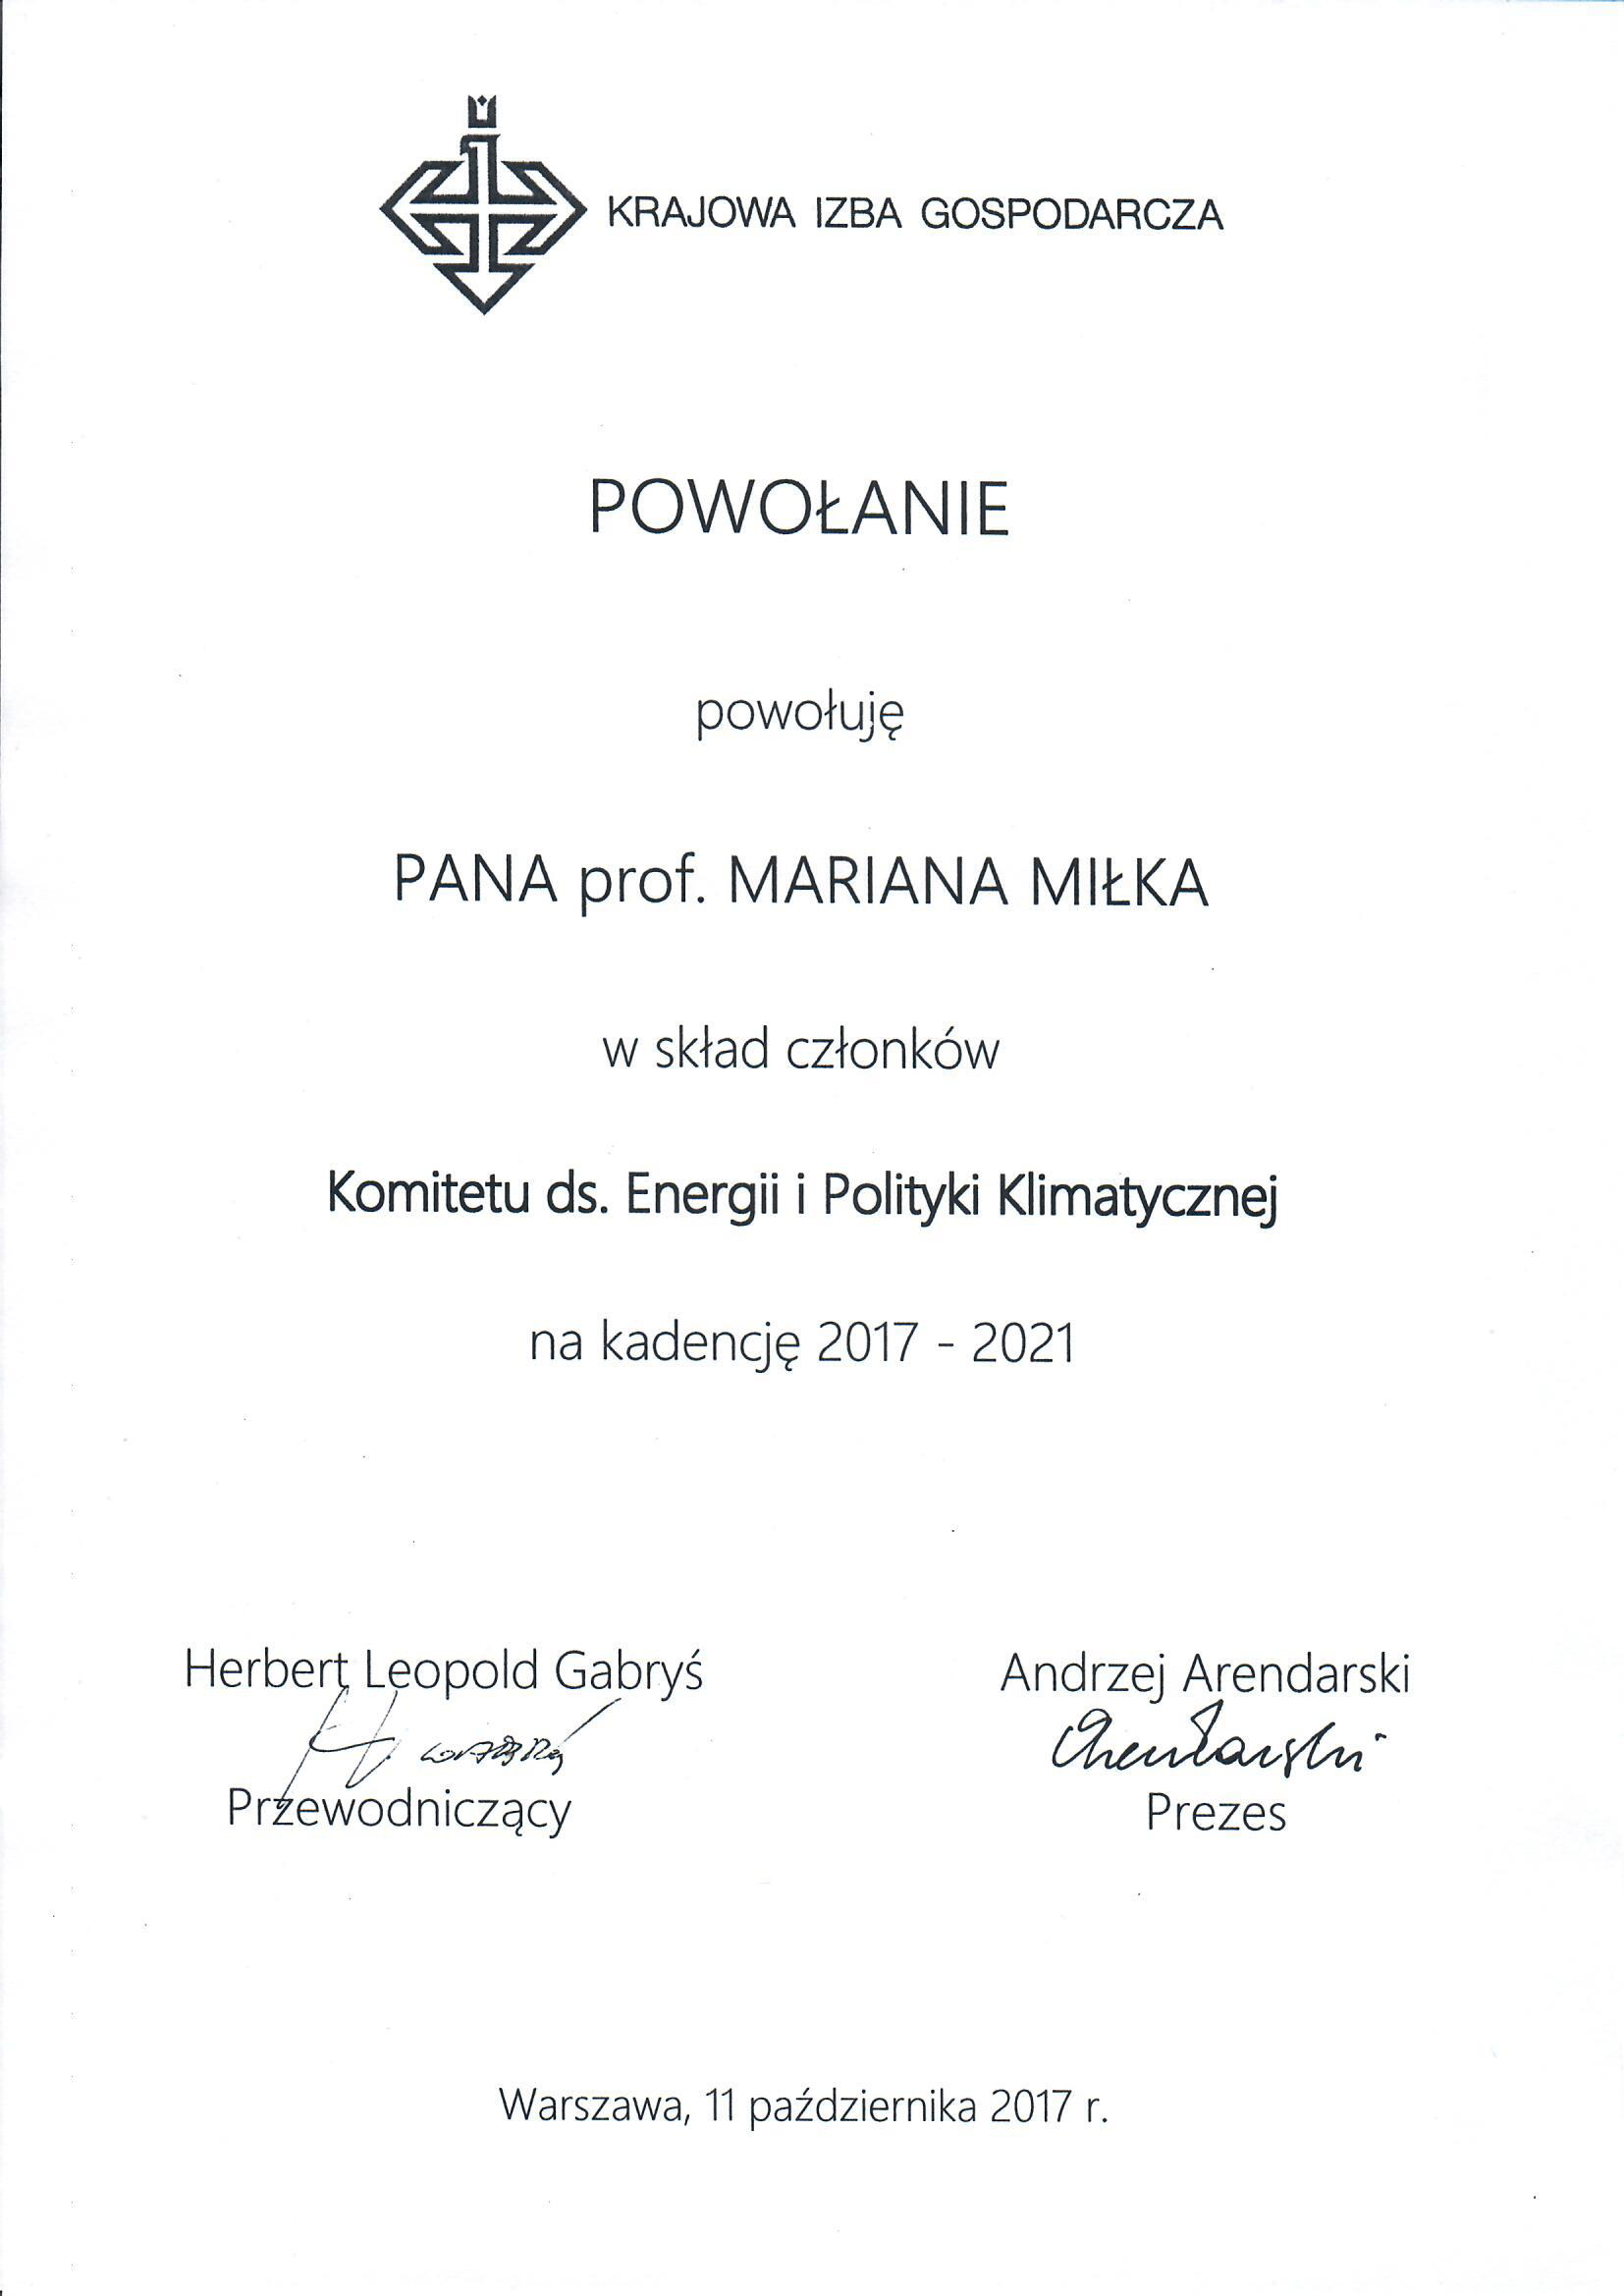 powołanie prof. M. Miłka do Komitetu.jpg